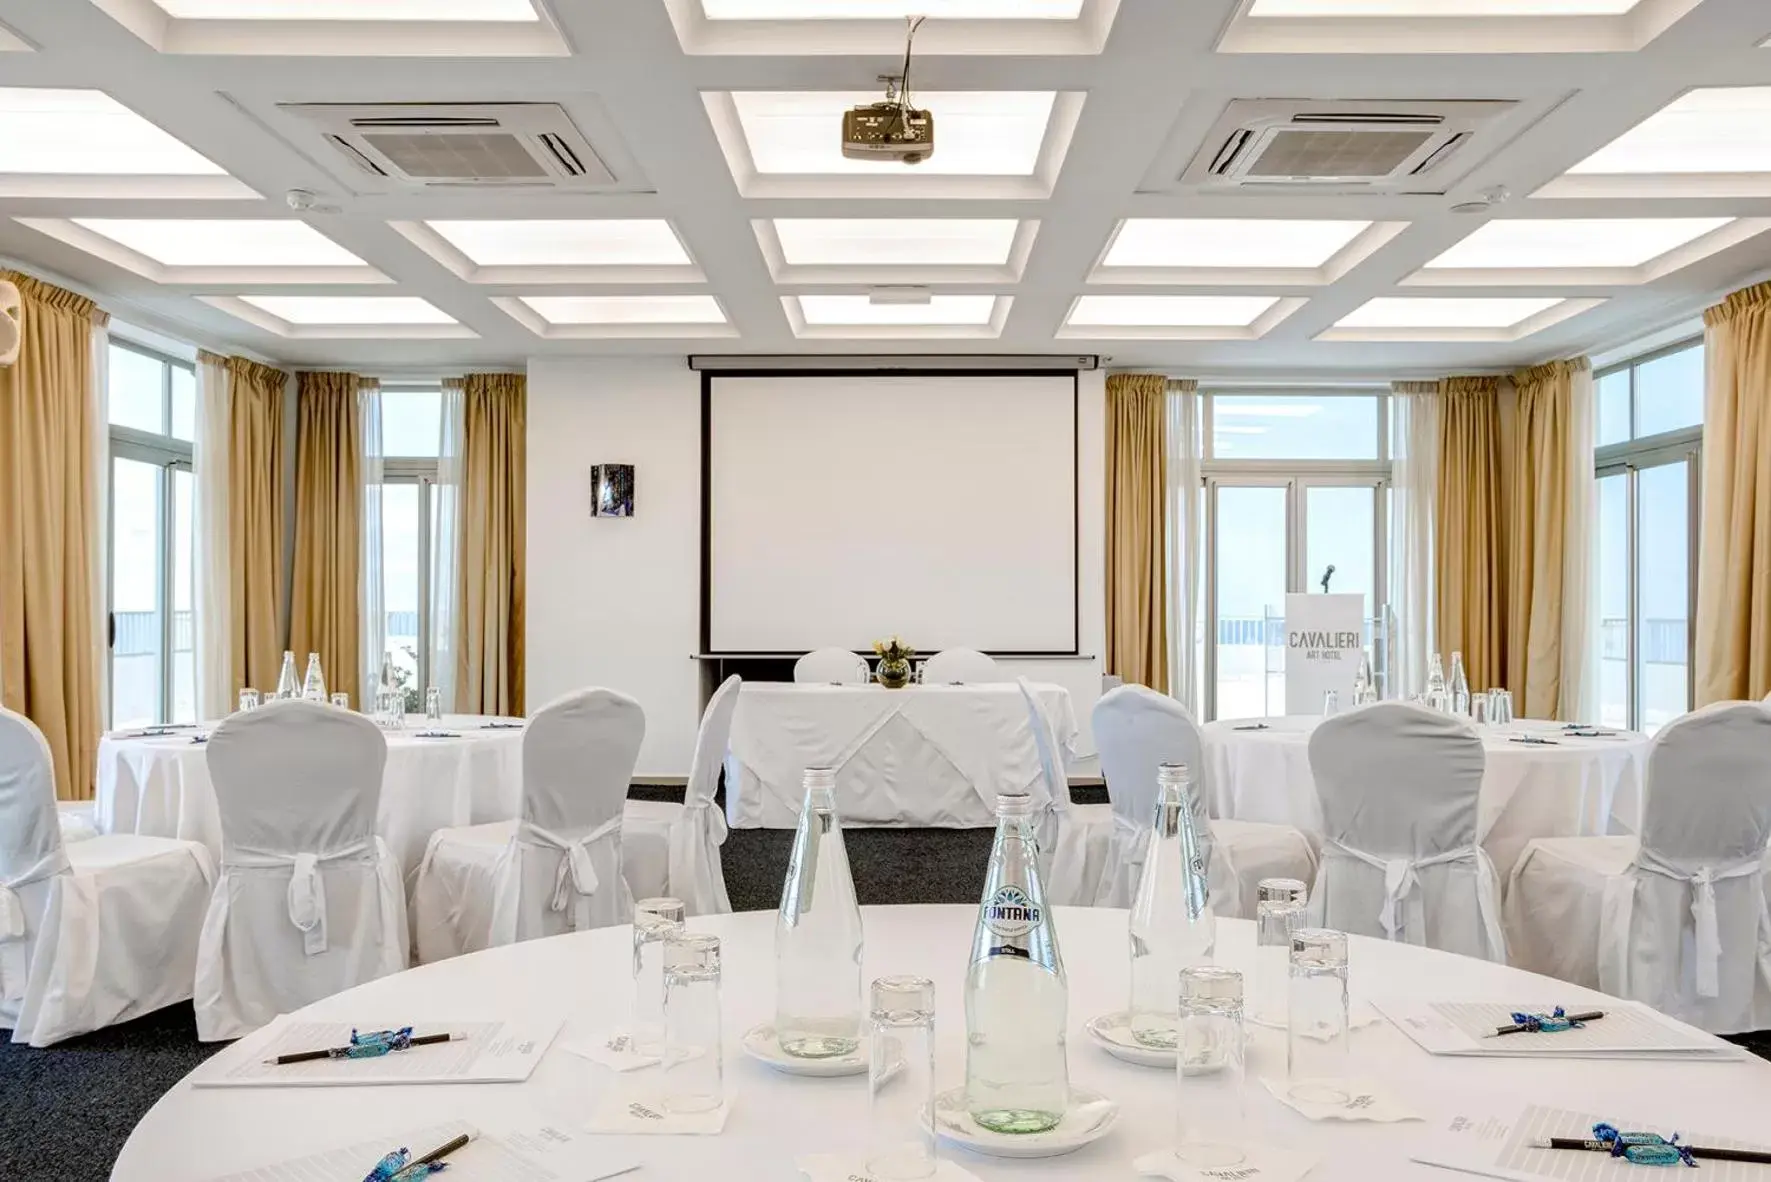 Banquet/Function facilities, Banquet Facilities in Cavalieri Art Hotel